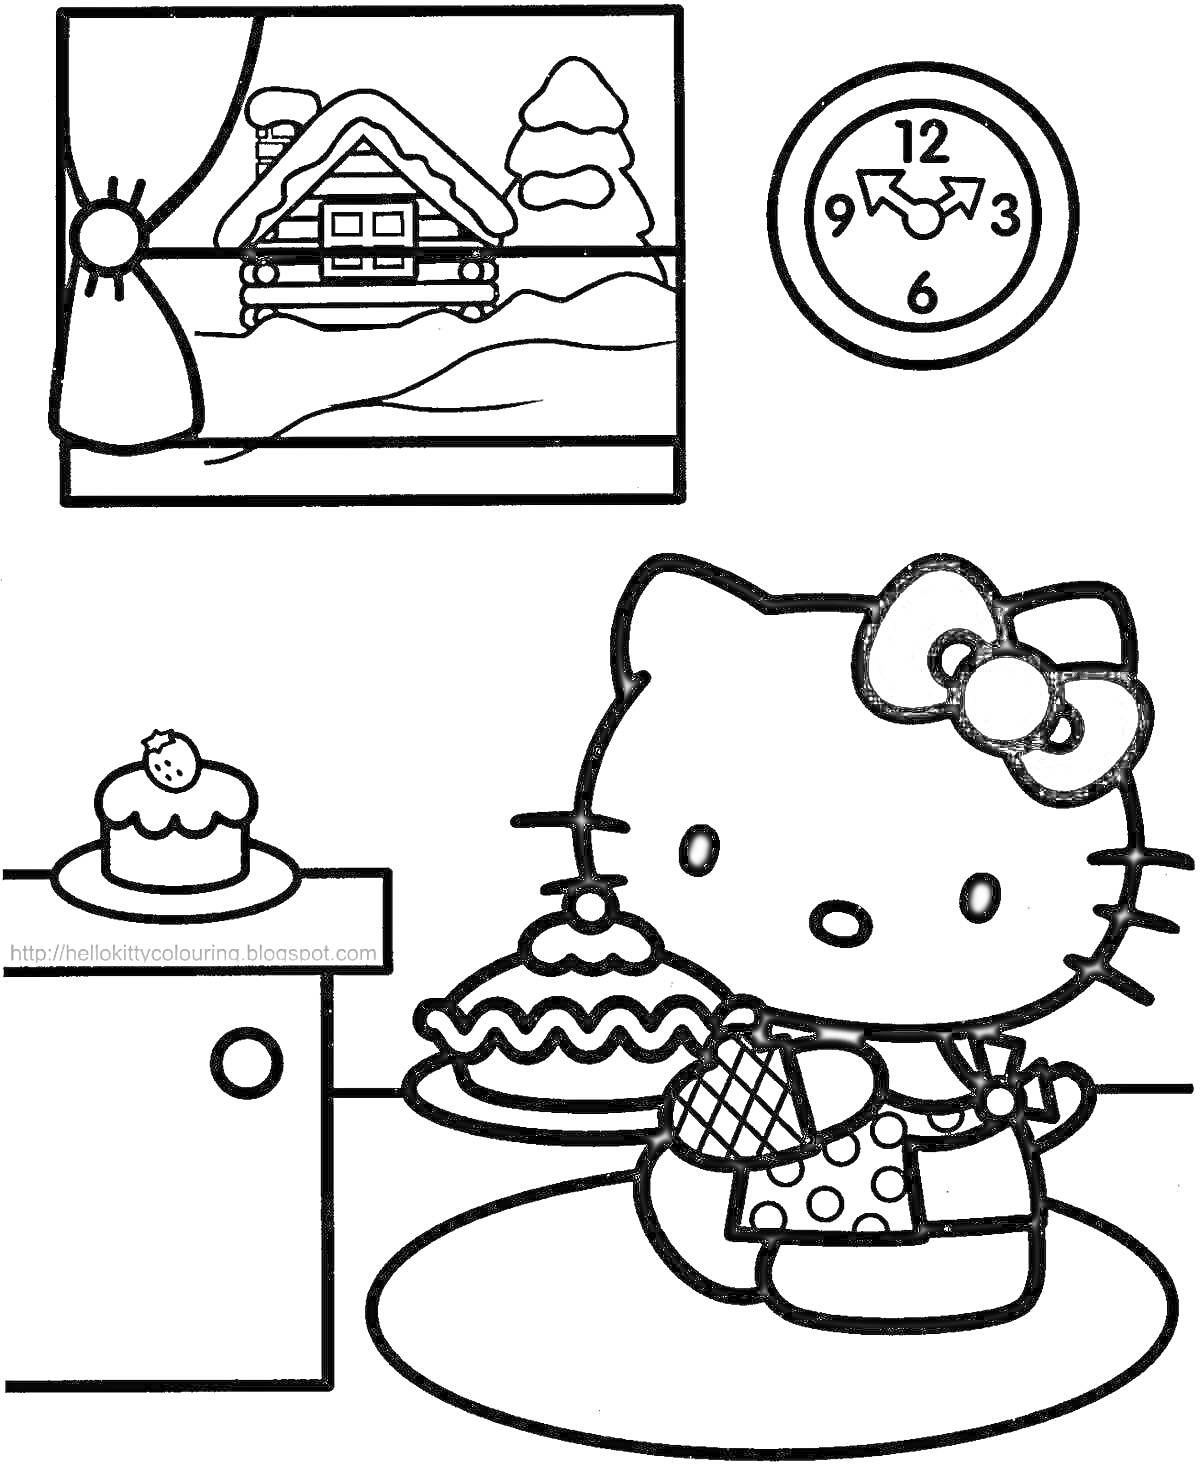 Раскраска Хелло Китти с тортом в руках, в комнате с окном, видом на заснеженный дом, часами и пирожным на столе